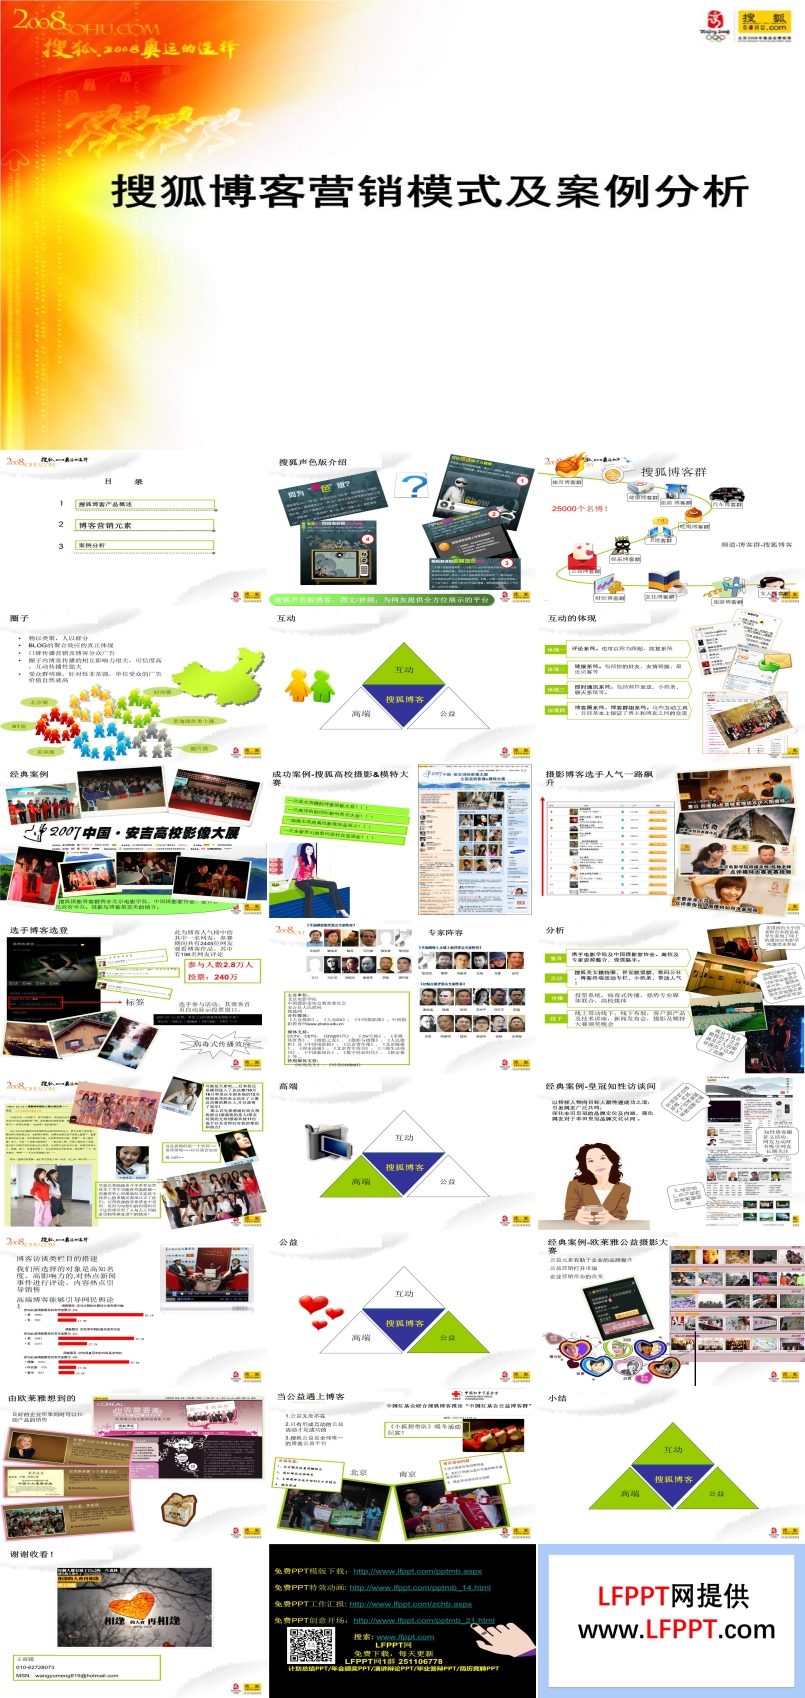 搜狐博客营销模式与市场案例分析市场调研PPT模板